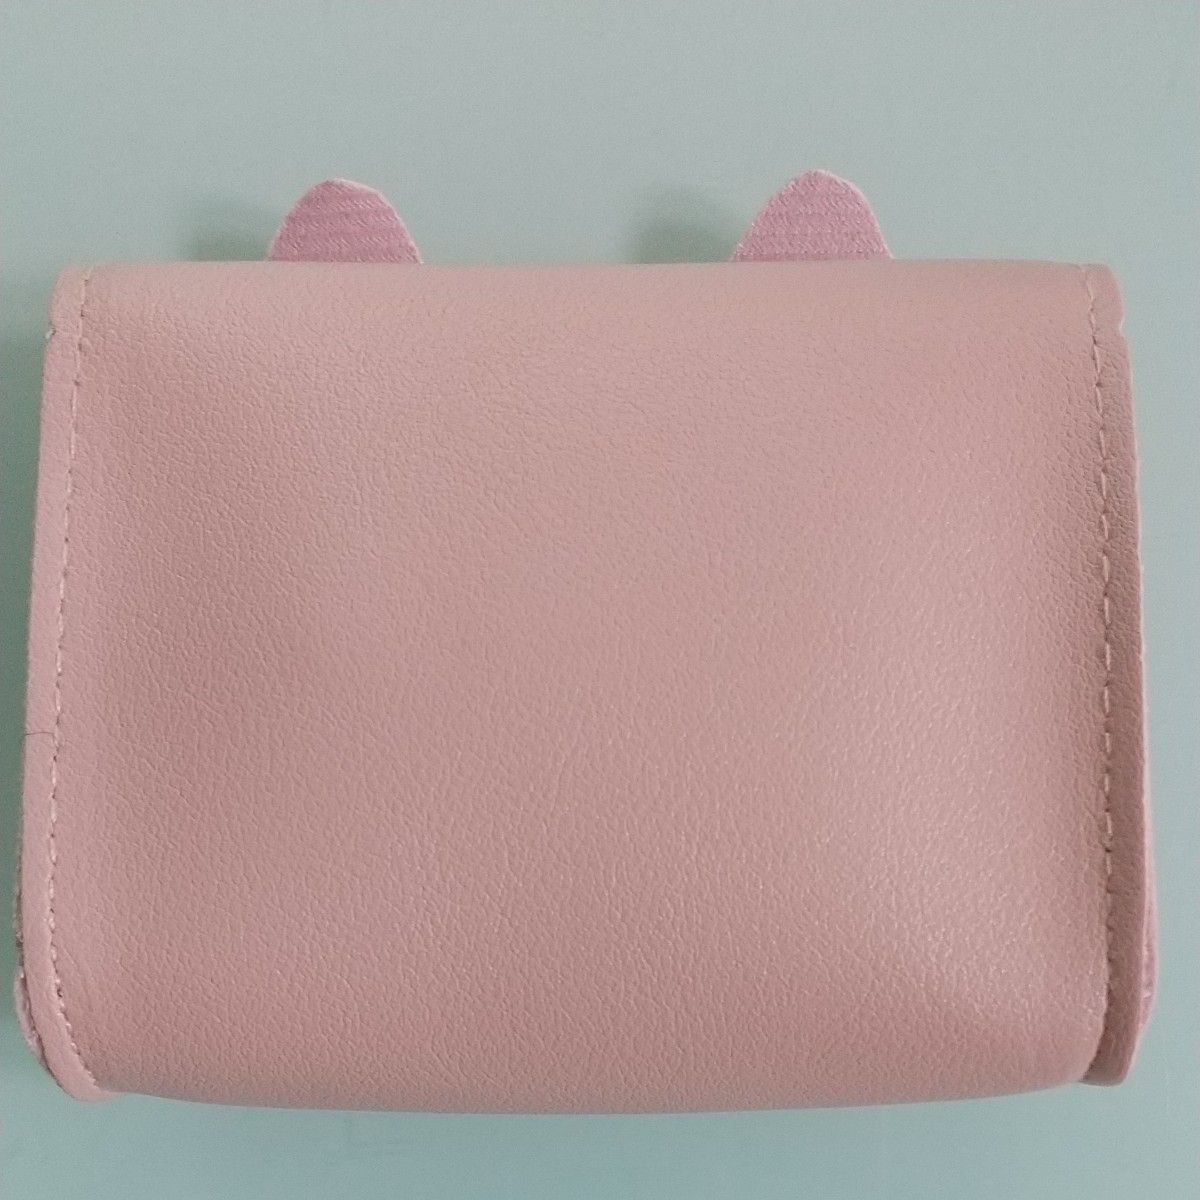 ポーチ ピンク ポシェット ショルダーバッグ 女児 可愛い 小物入れ  財布 子供バッグ